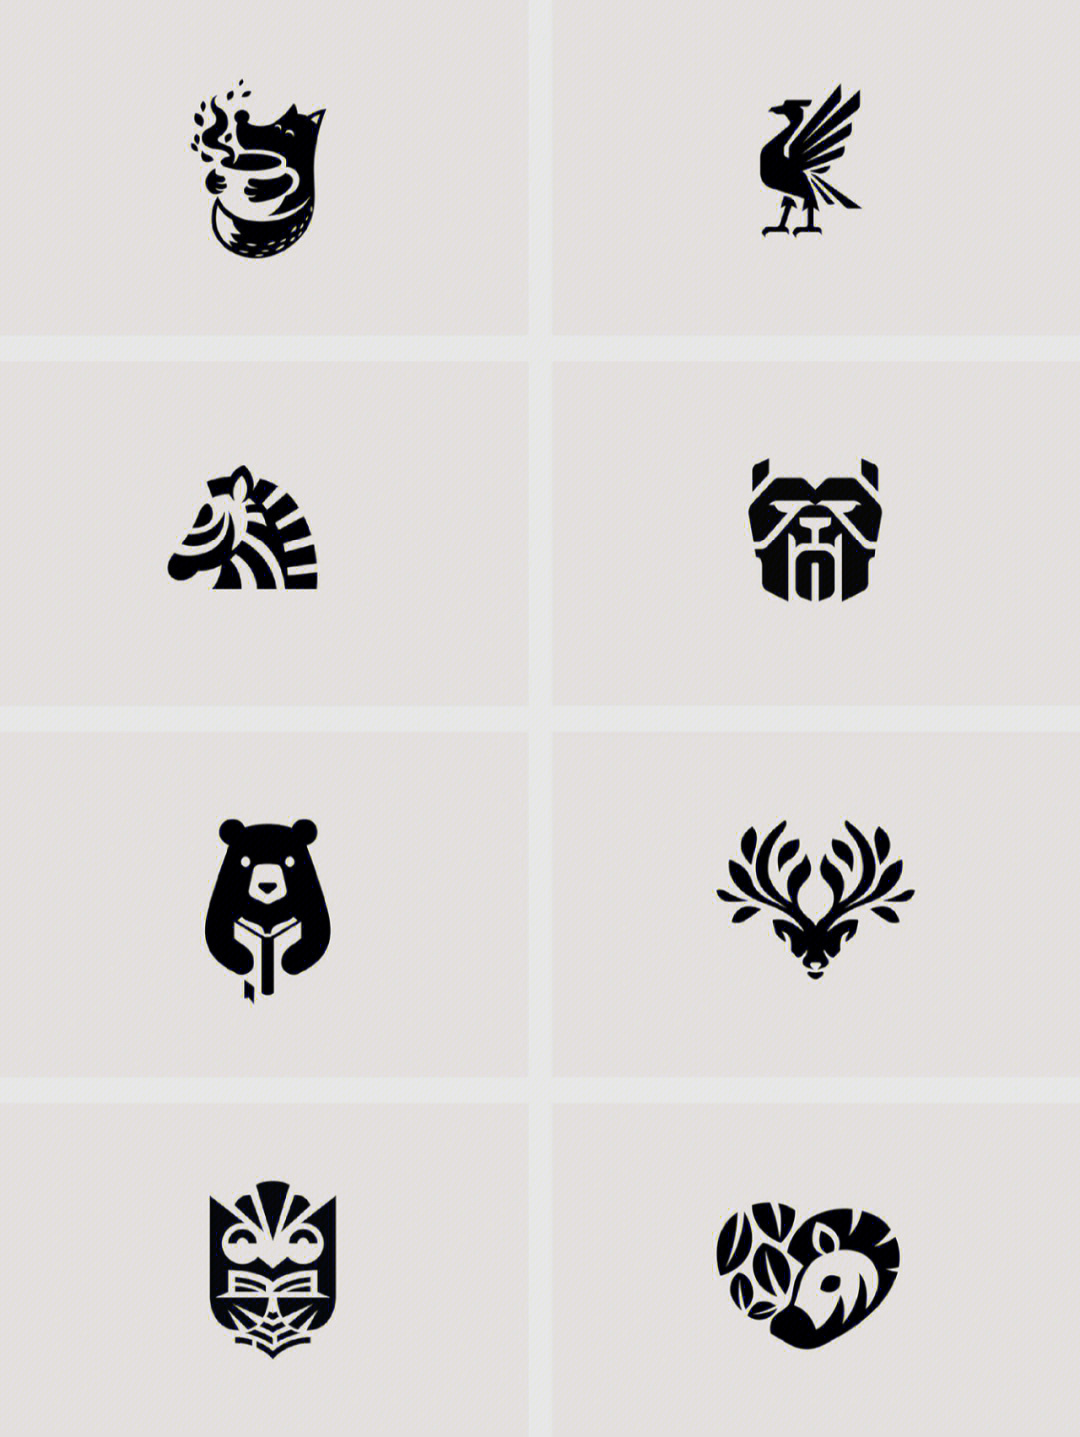 分享一组简洁动物logo,一起来学习吧!